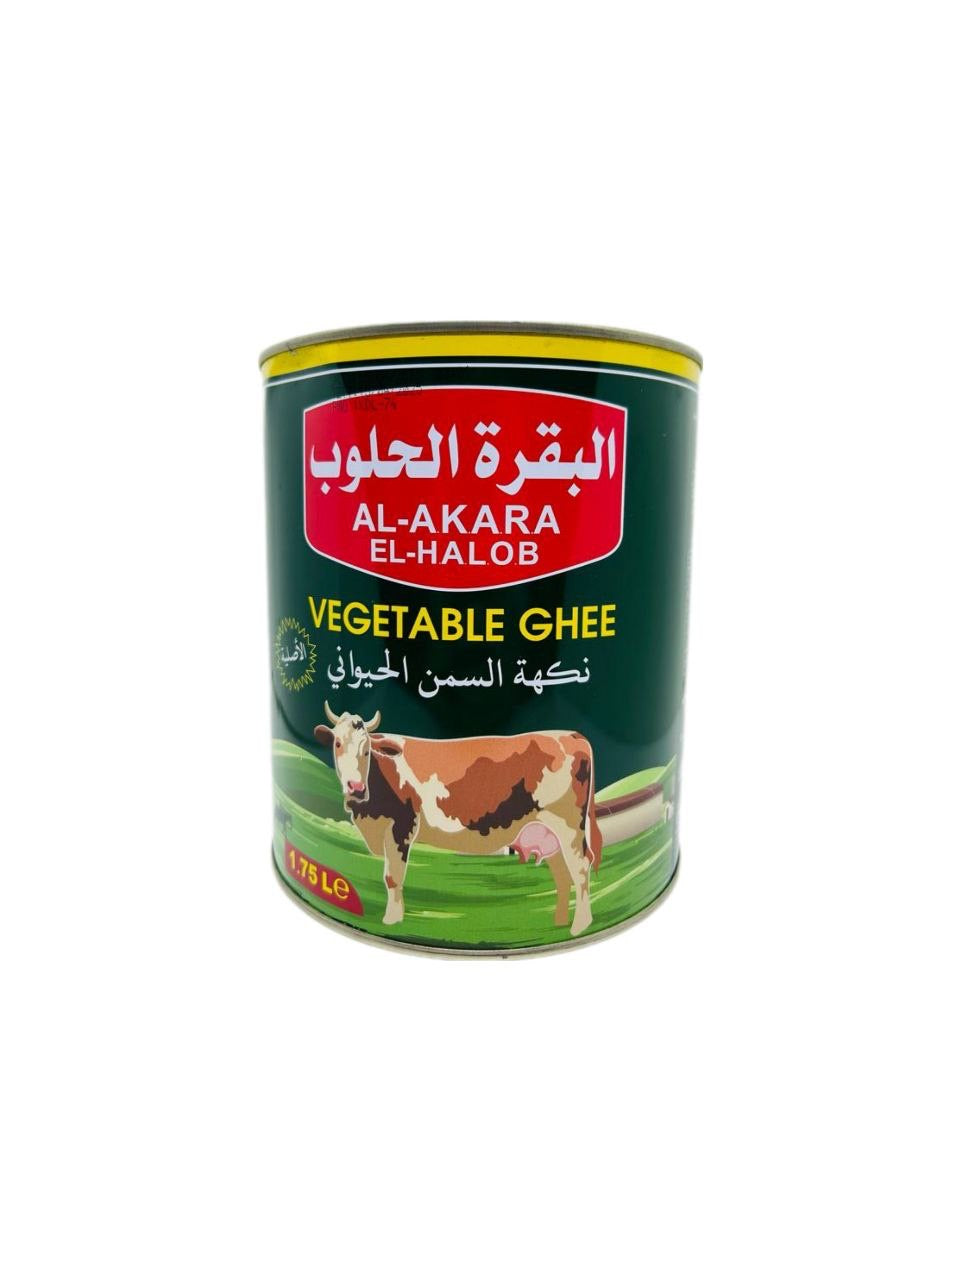 Alhaloub vegetarisches Ghee 1,75L